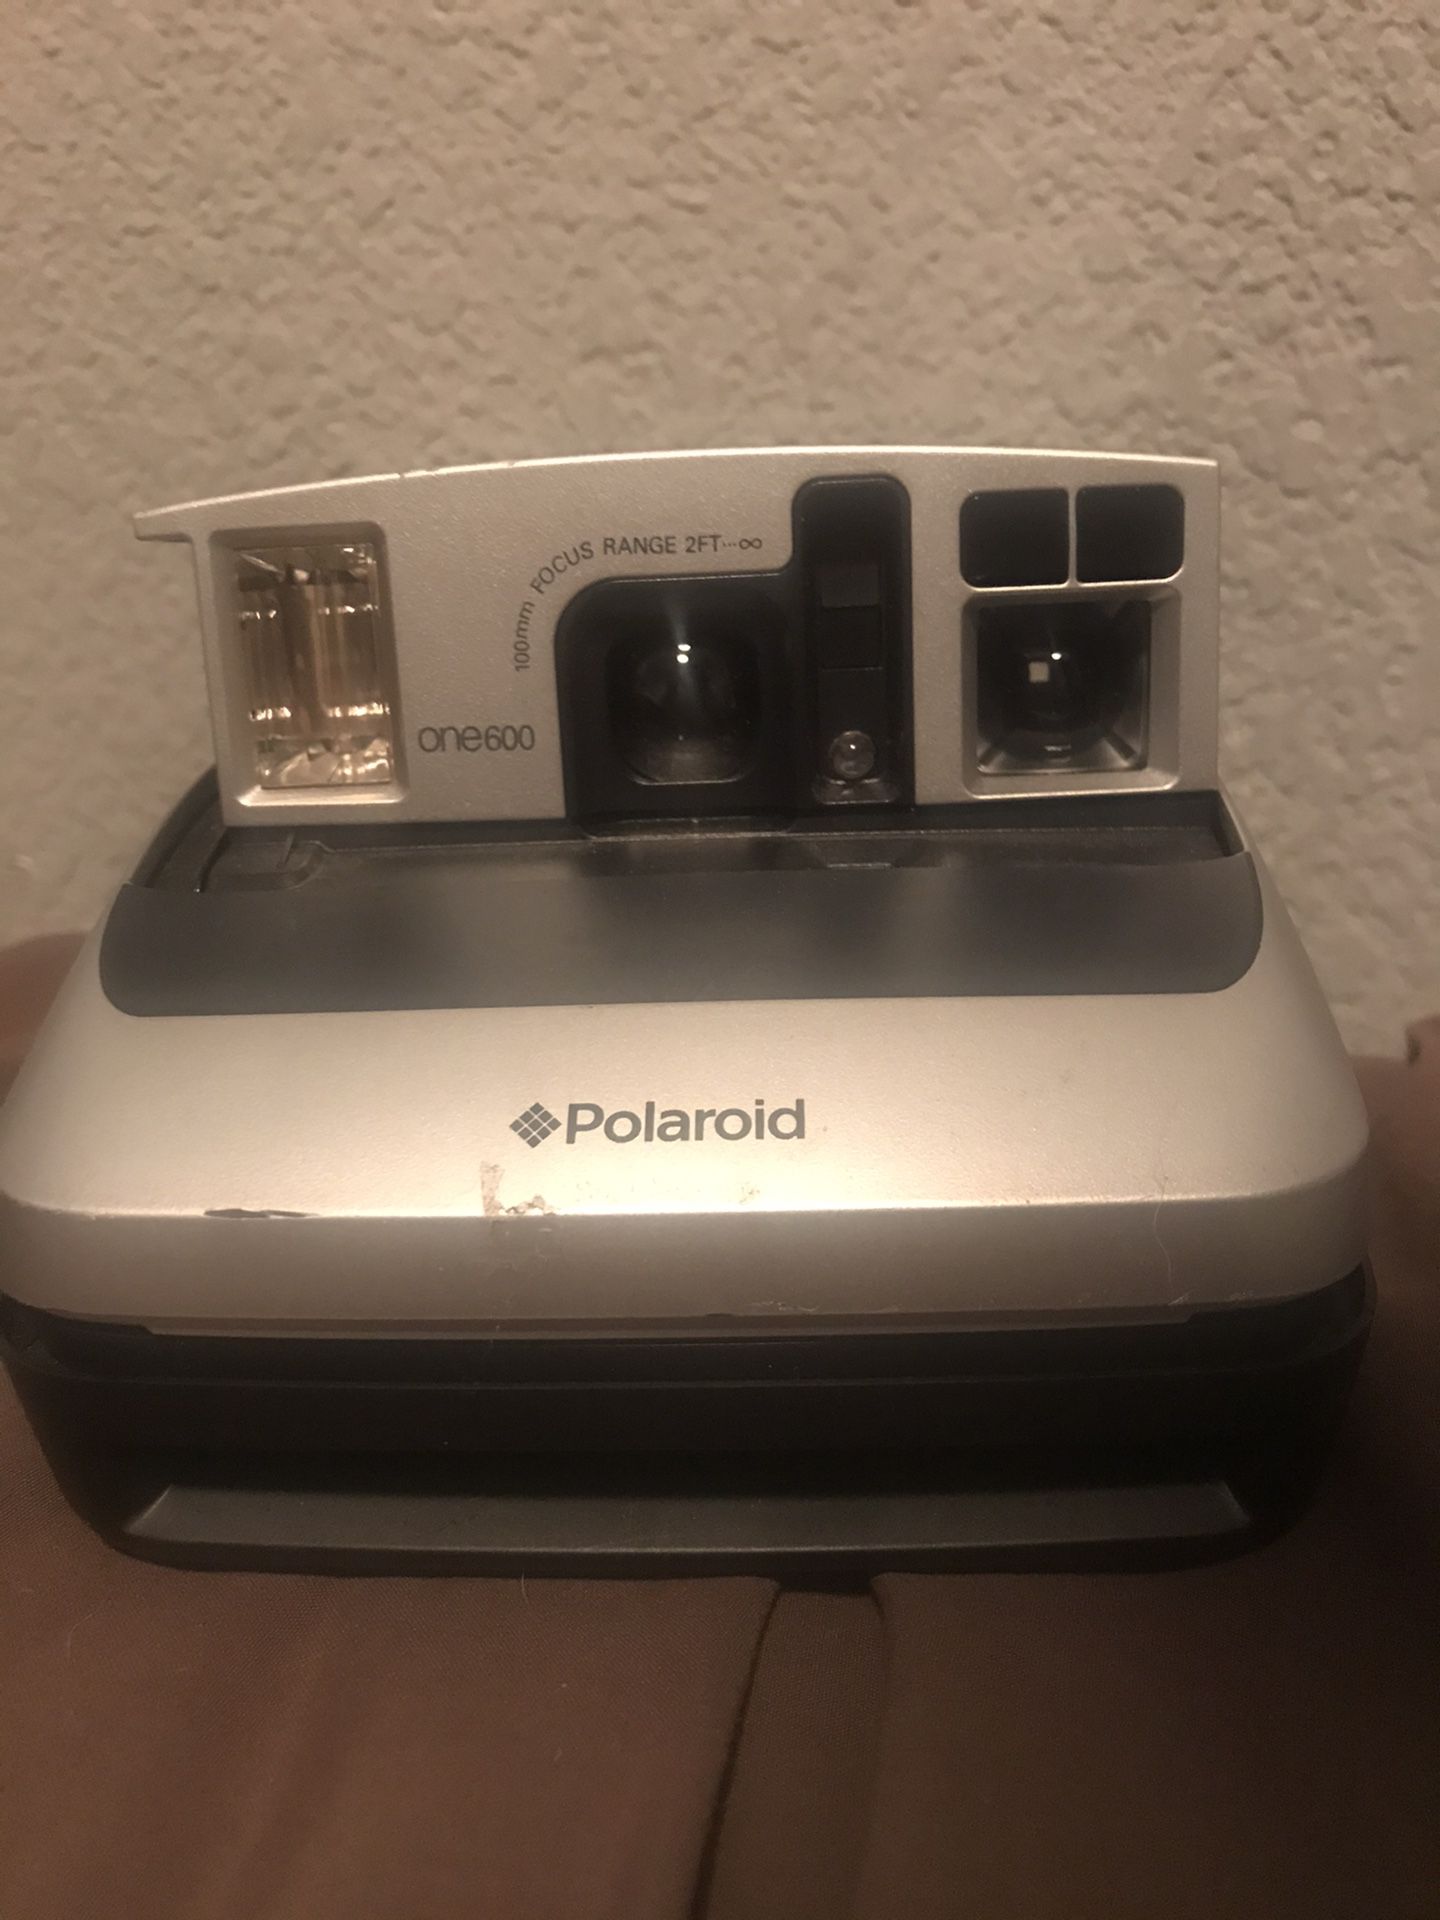 Polaroid instant film camera 100mm focus range 2ft